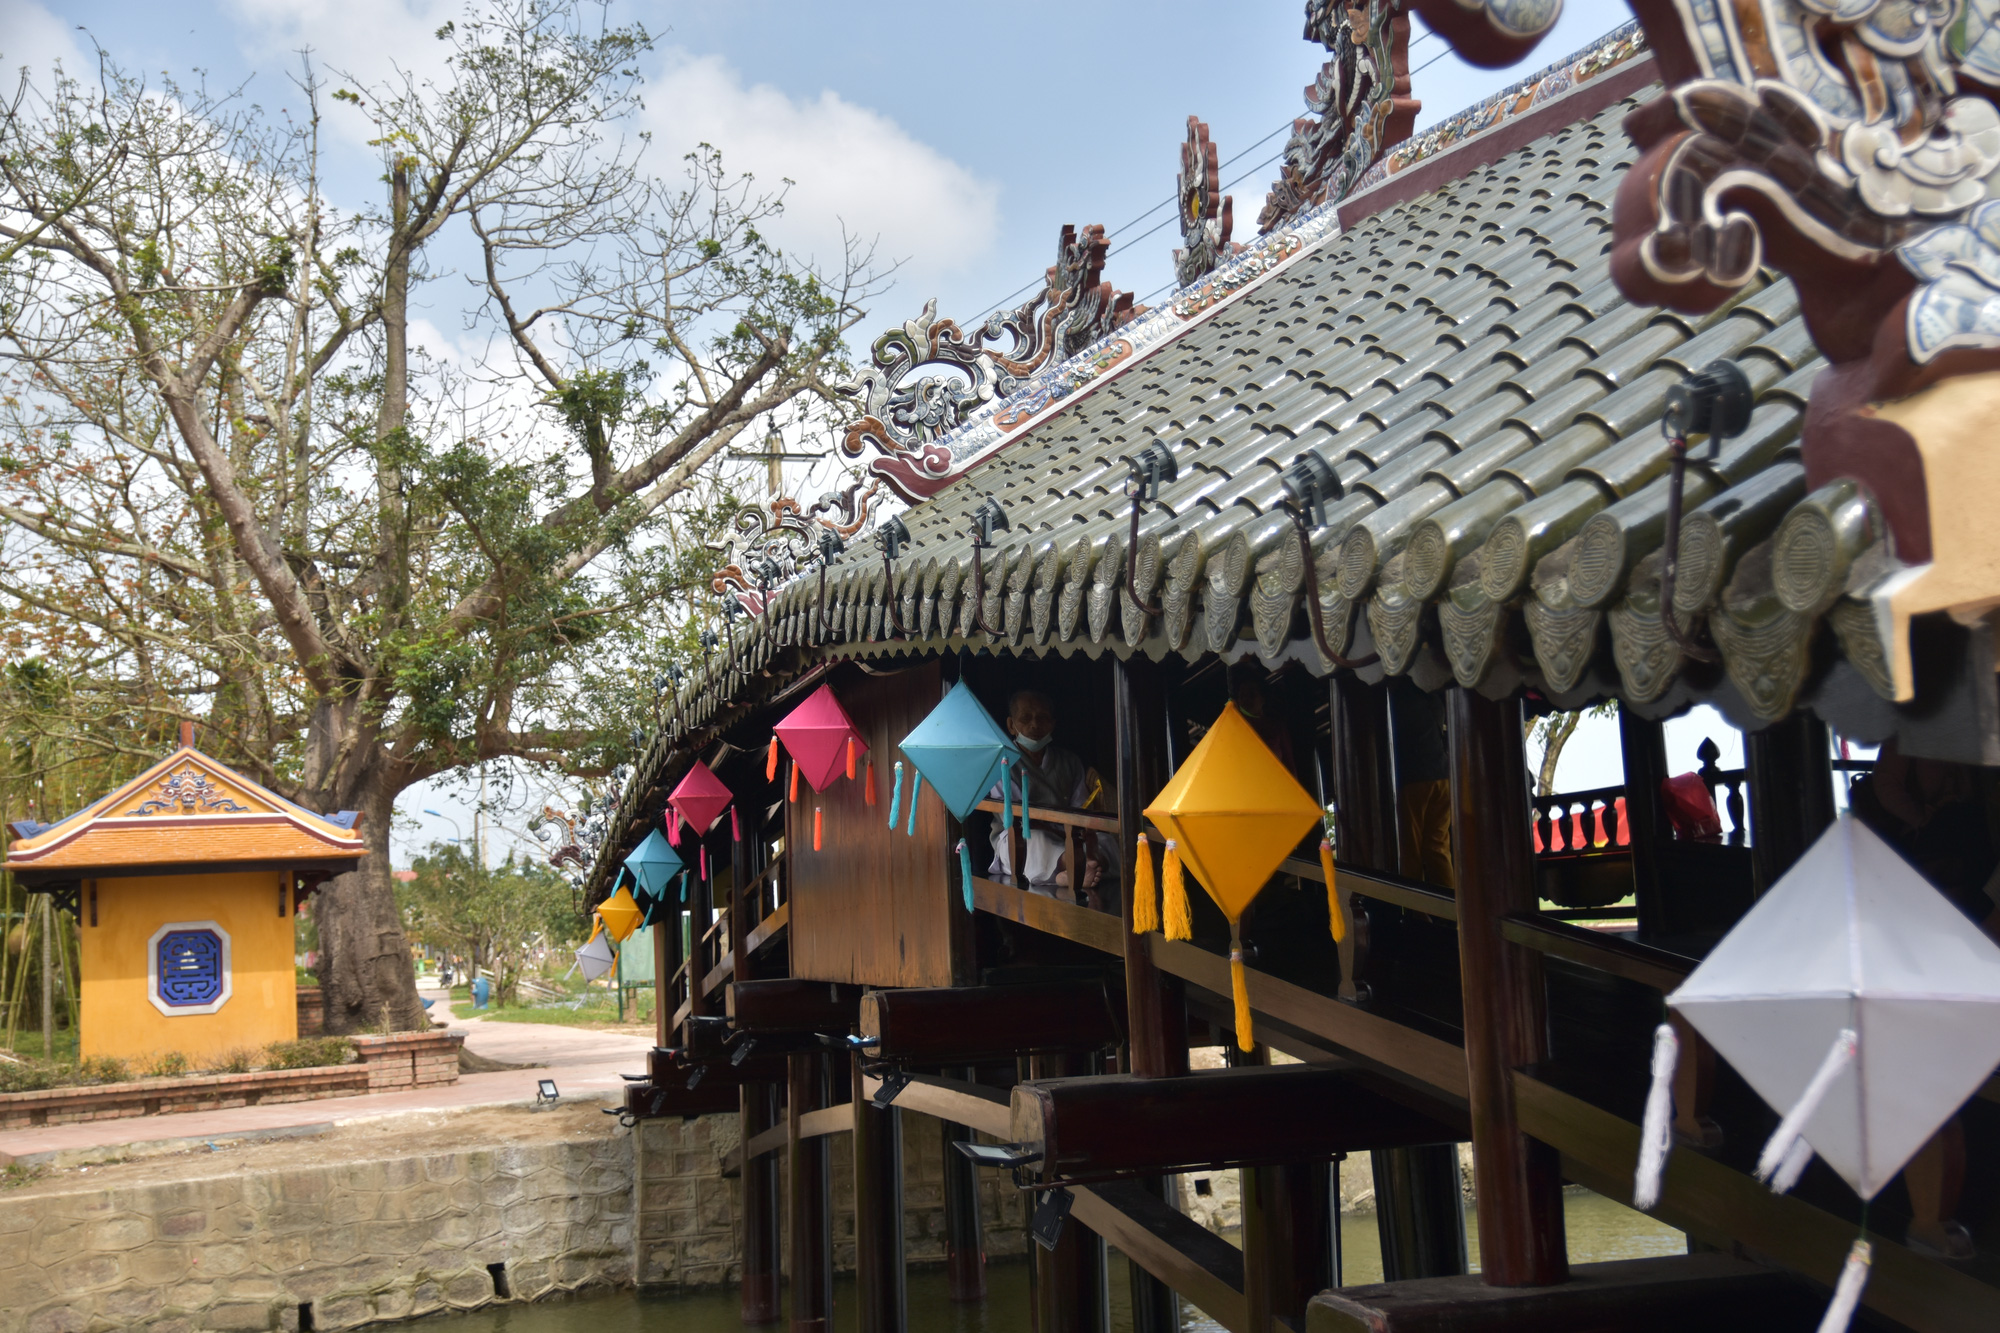 Cầu ngói Thanh Toàn là một trong những công trình kiến trúc độc đáo và đẹp mắt tại Huế. Sự kết hợp giữa kiến trúc truyền thống với thiết kế hiện đại tạo ra một không gian yên bình và đẹp đẽ bên bờ sông Thanh Toàn. Không nên bỏ lỡ cơ hội để chiêm ngưỡng tác phẩm độc đáo này.